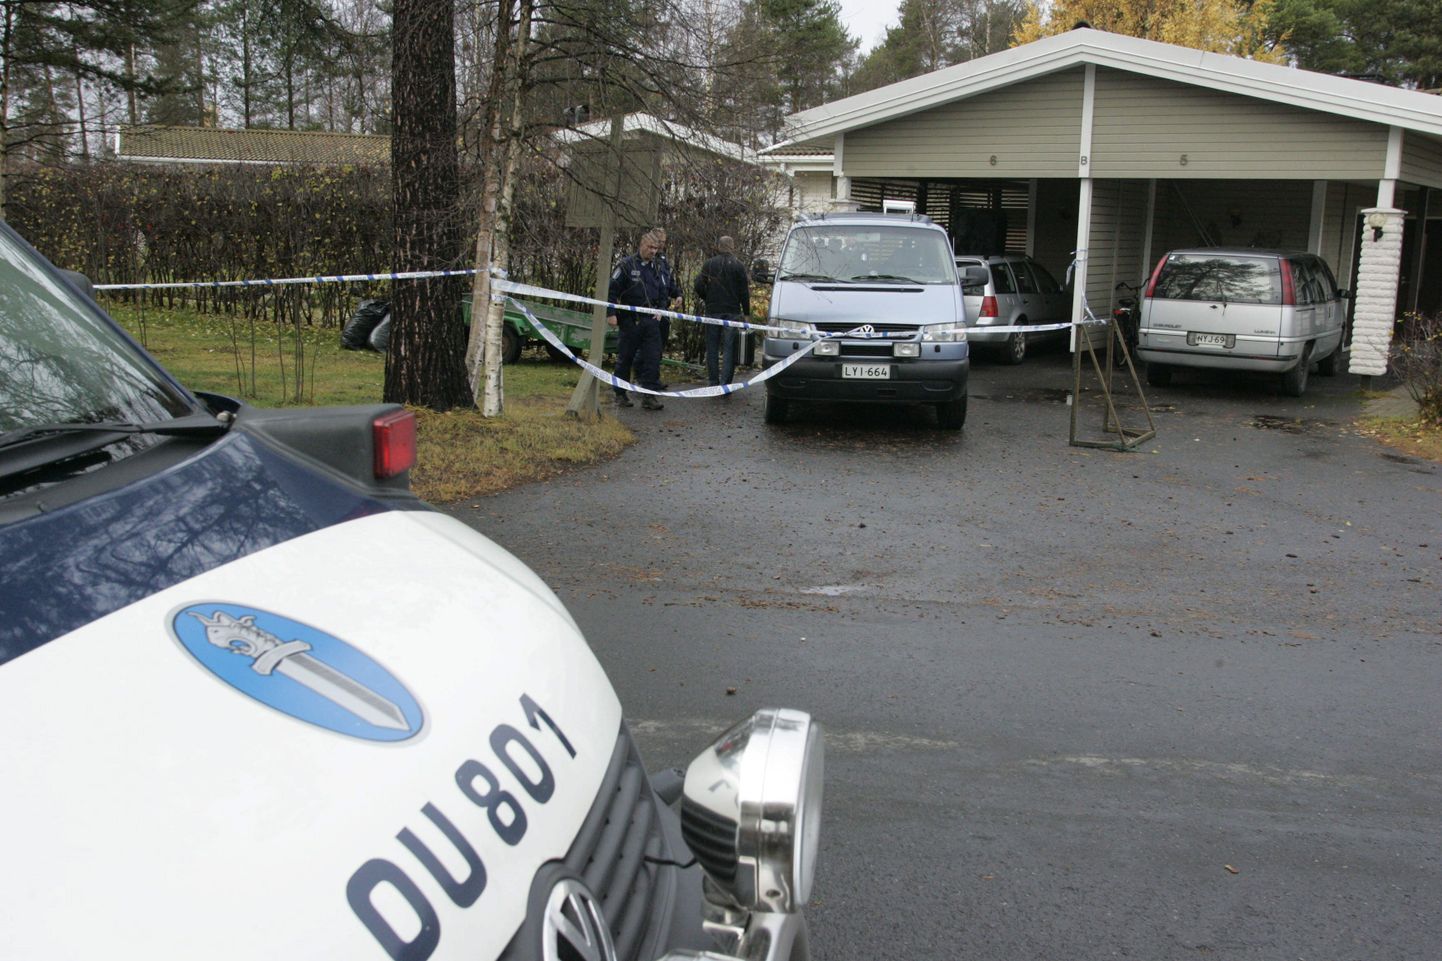 Soome politsei ja uurijad lahendamas järjekordset peredraamat.